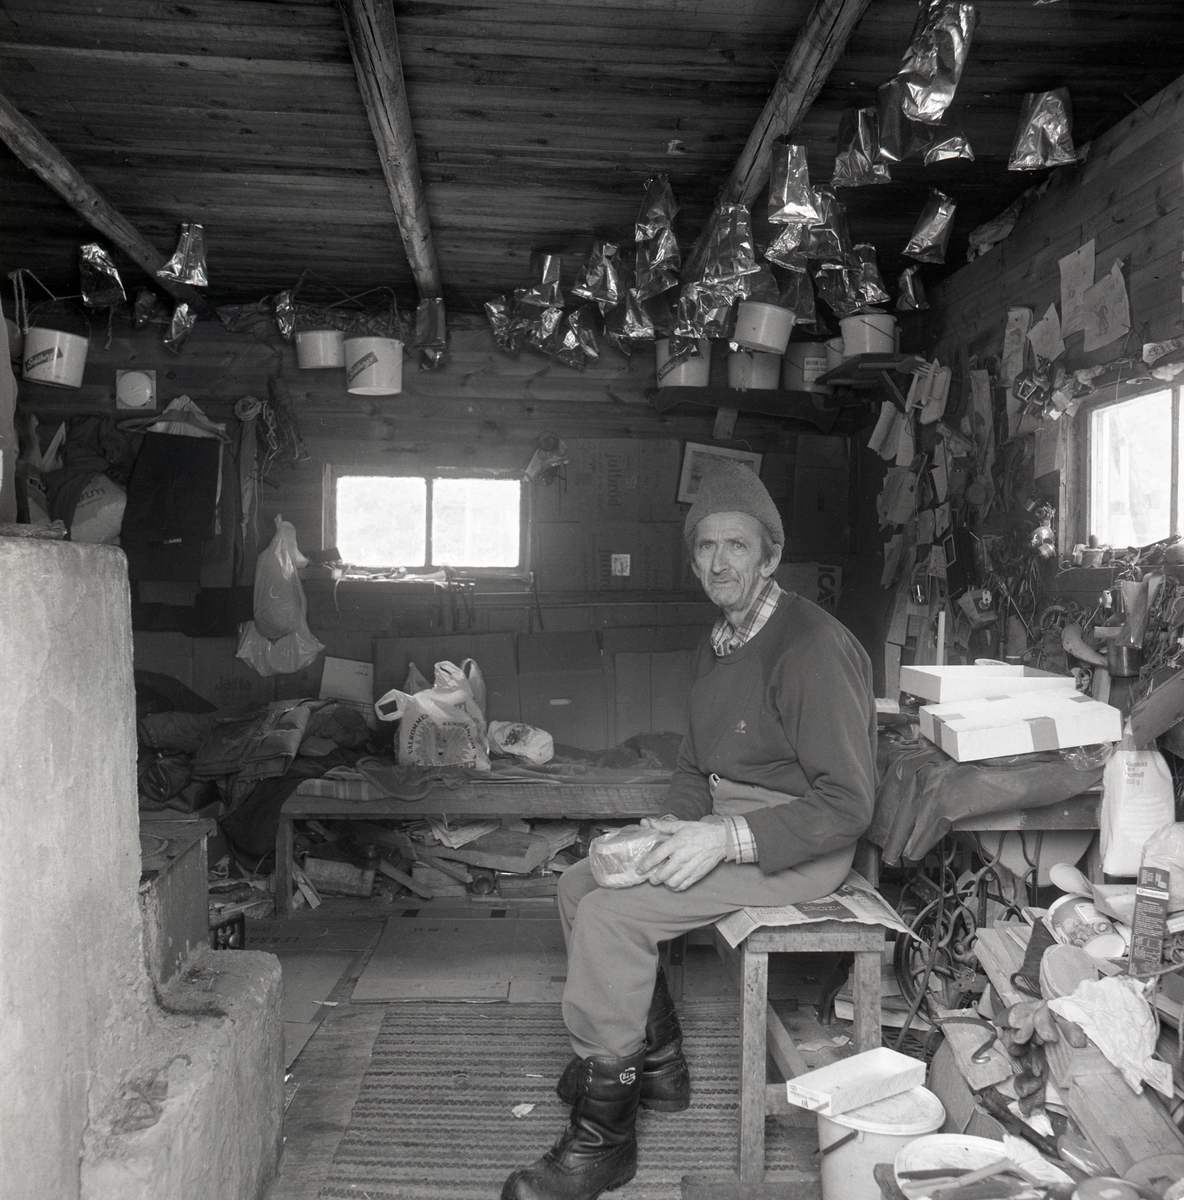 Jean Ludvig Rönnberg "Ludde i skogen", 
sitter i sin stuga i Vallsta den 11 mars 1986.